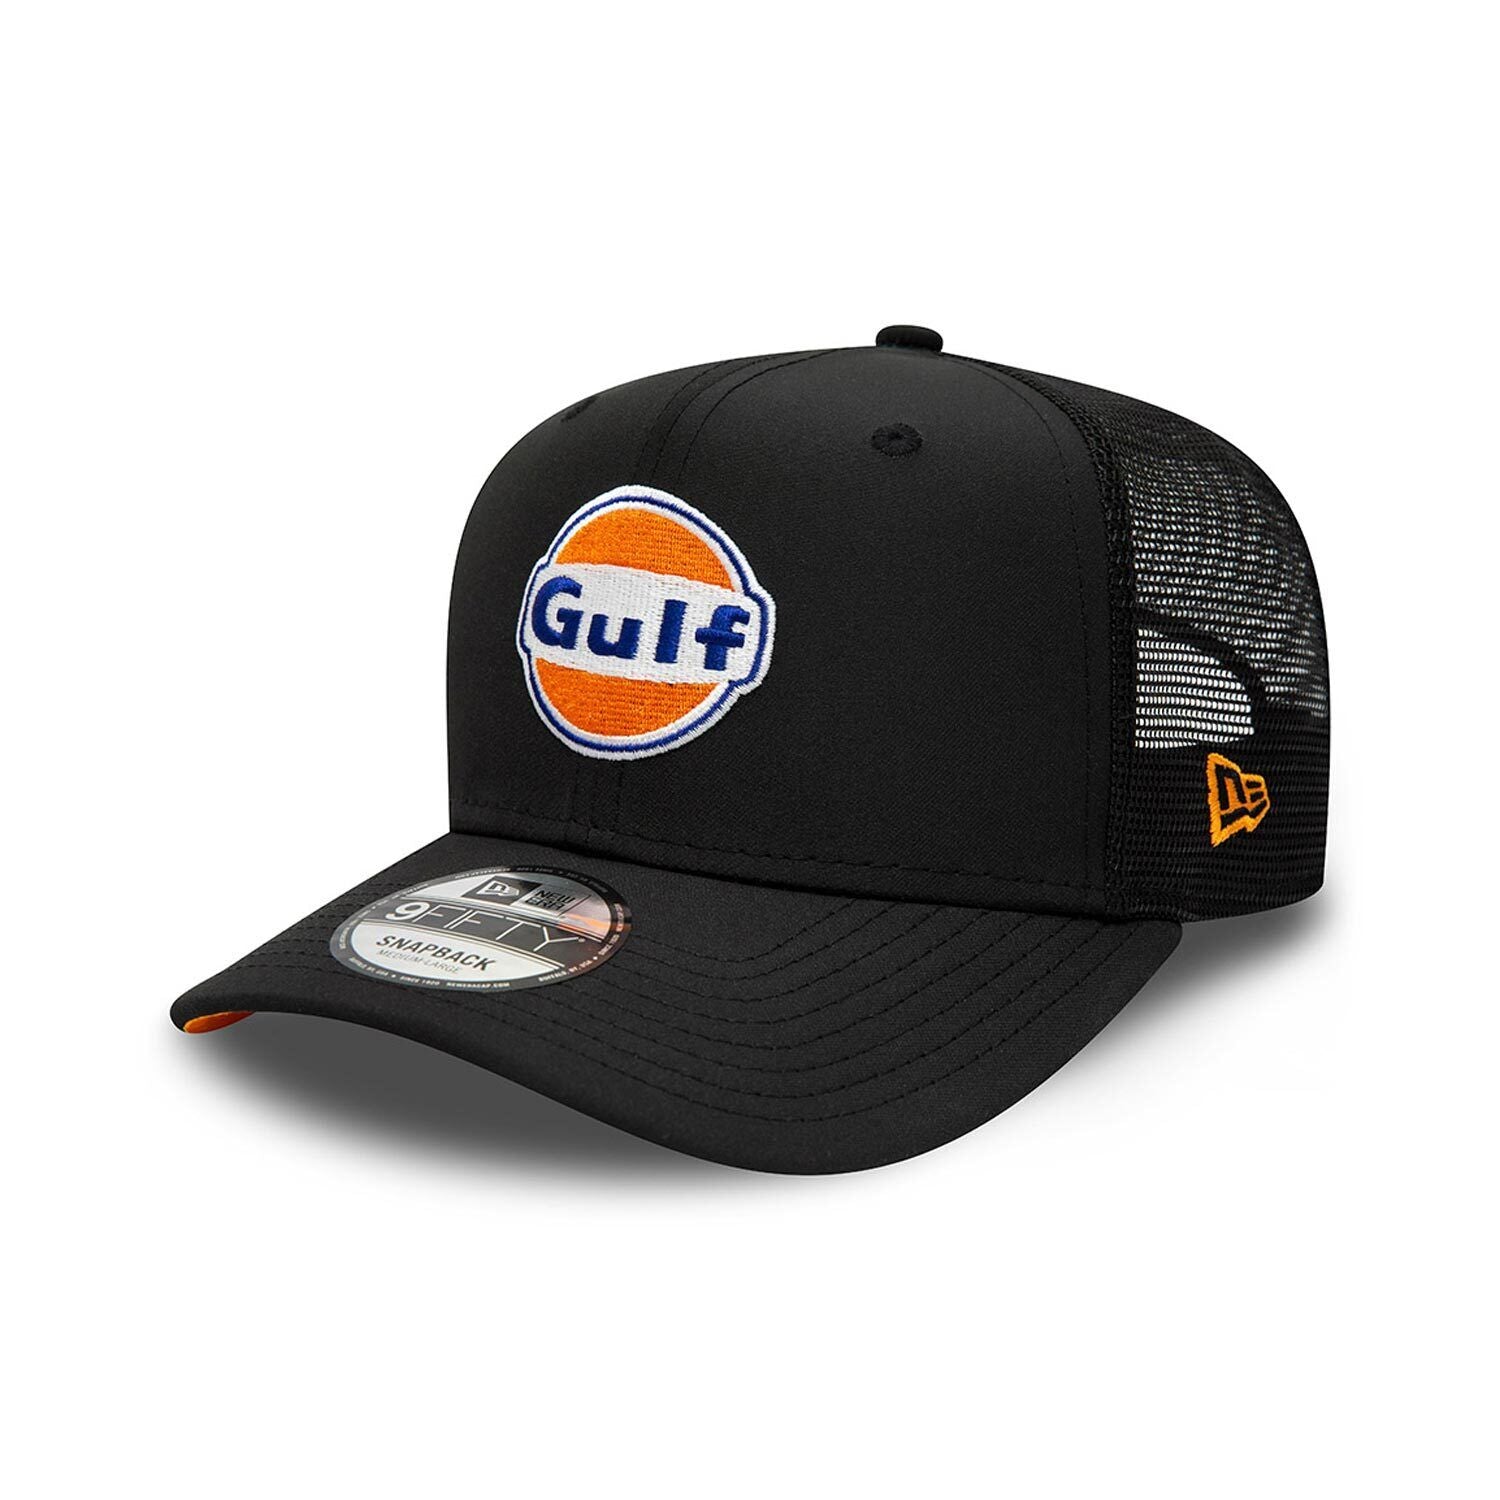 McLaren F1 Adult Gulf Special Edition Trucker Hat Black